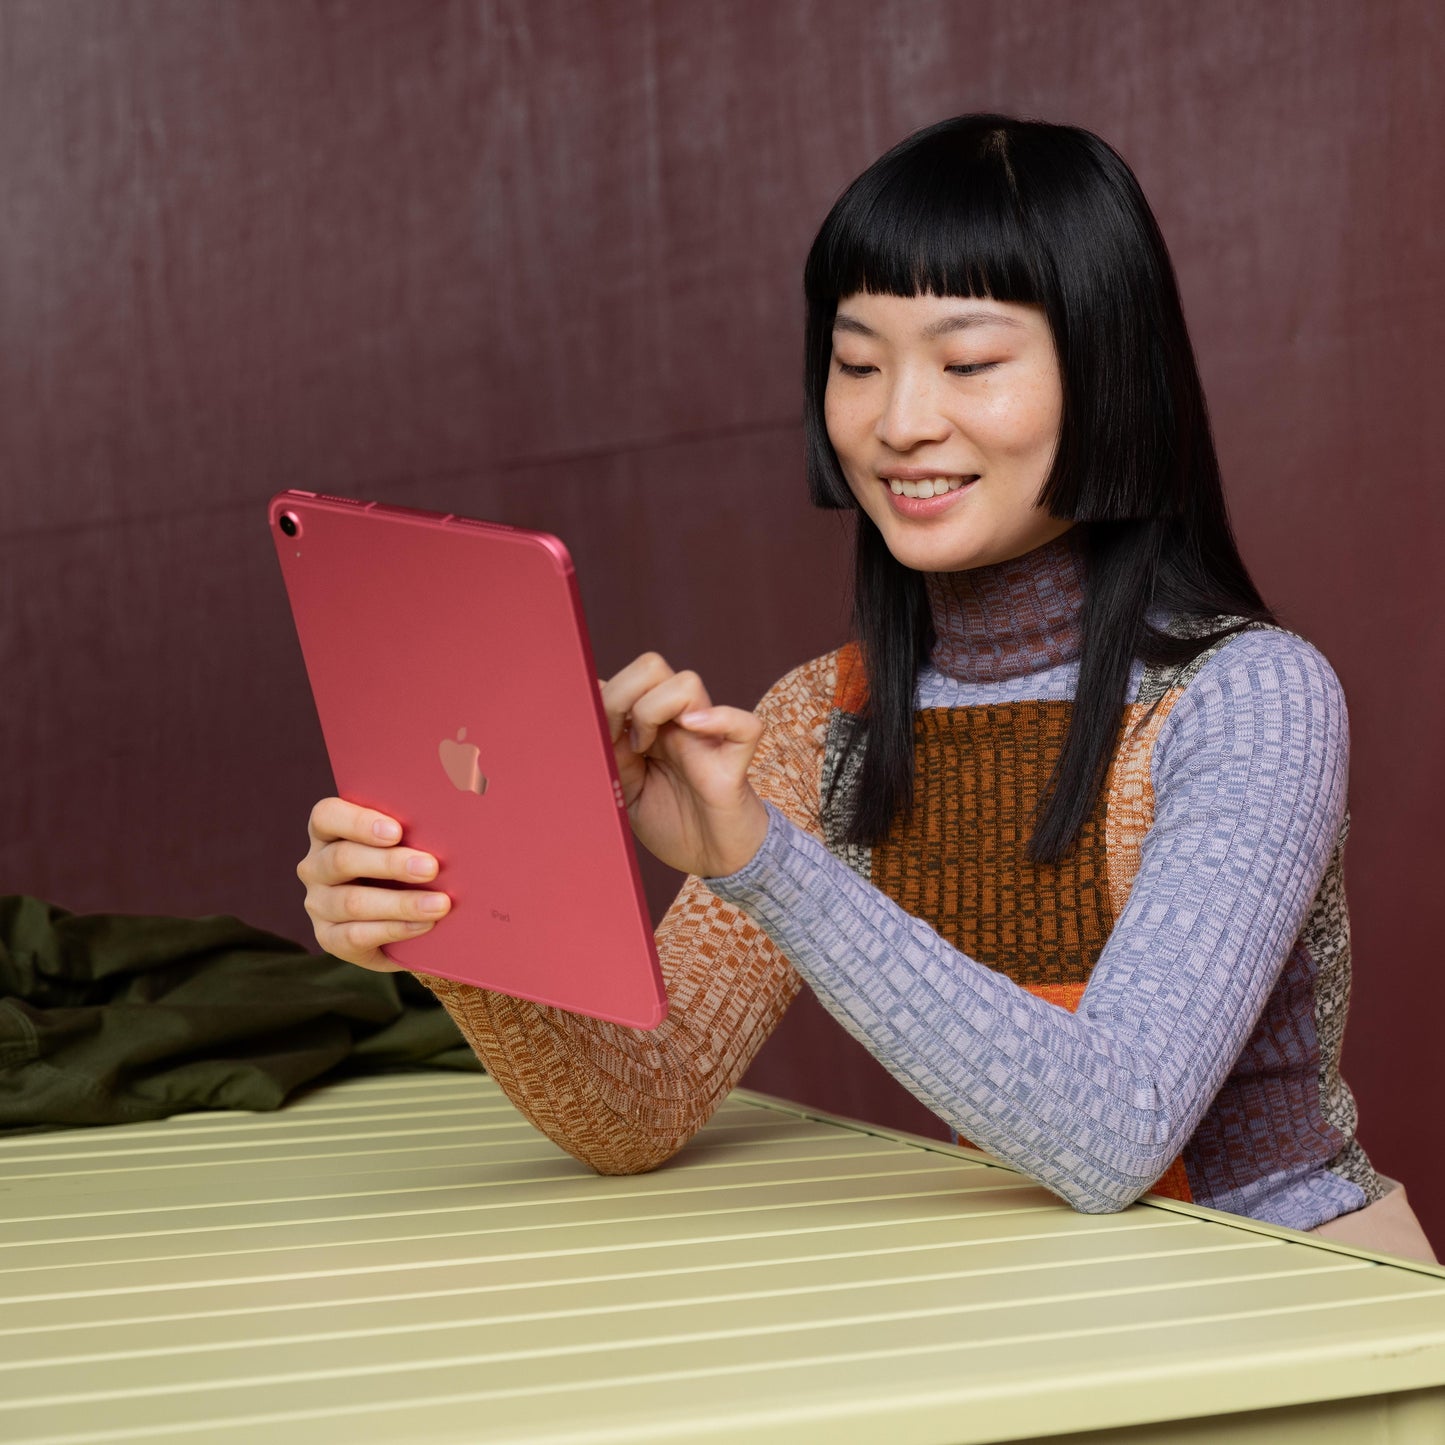 2022 iPad 10,9 pouces Wi-Fi, 256 Go - Rose (10e génération)